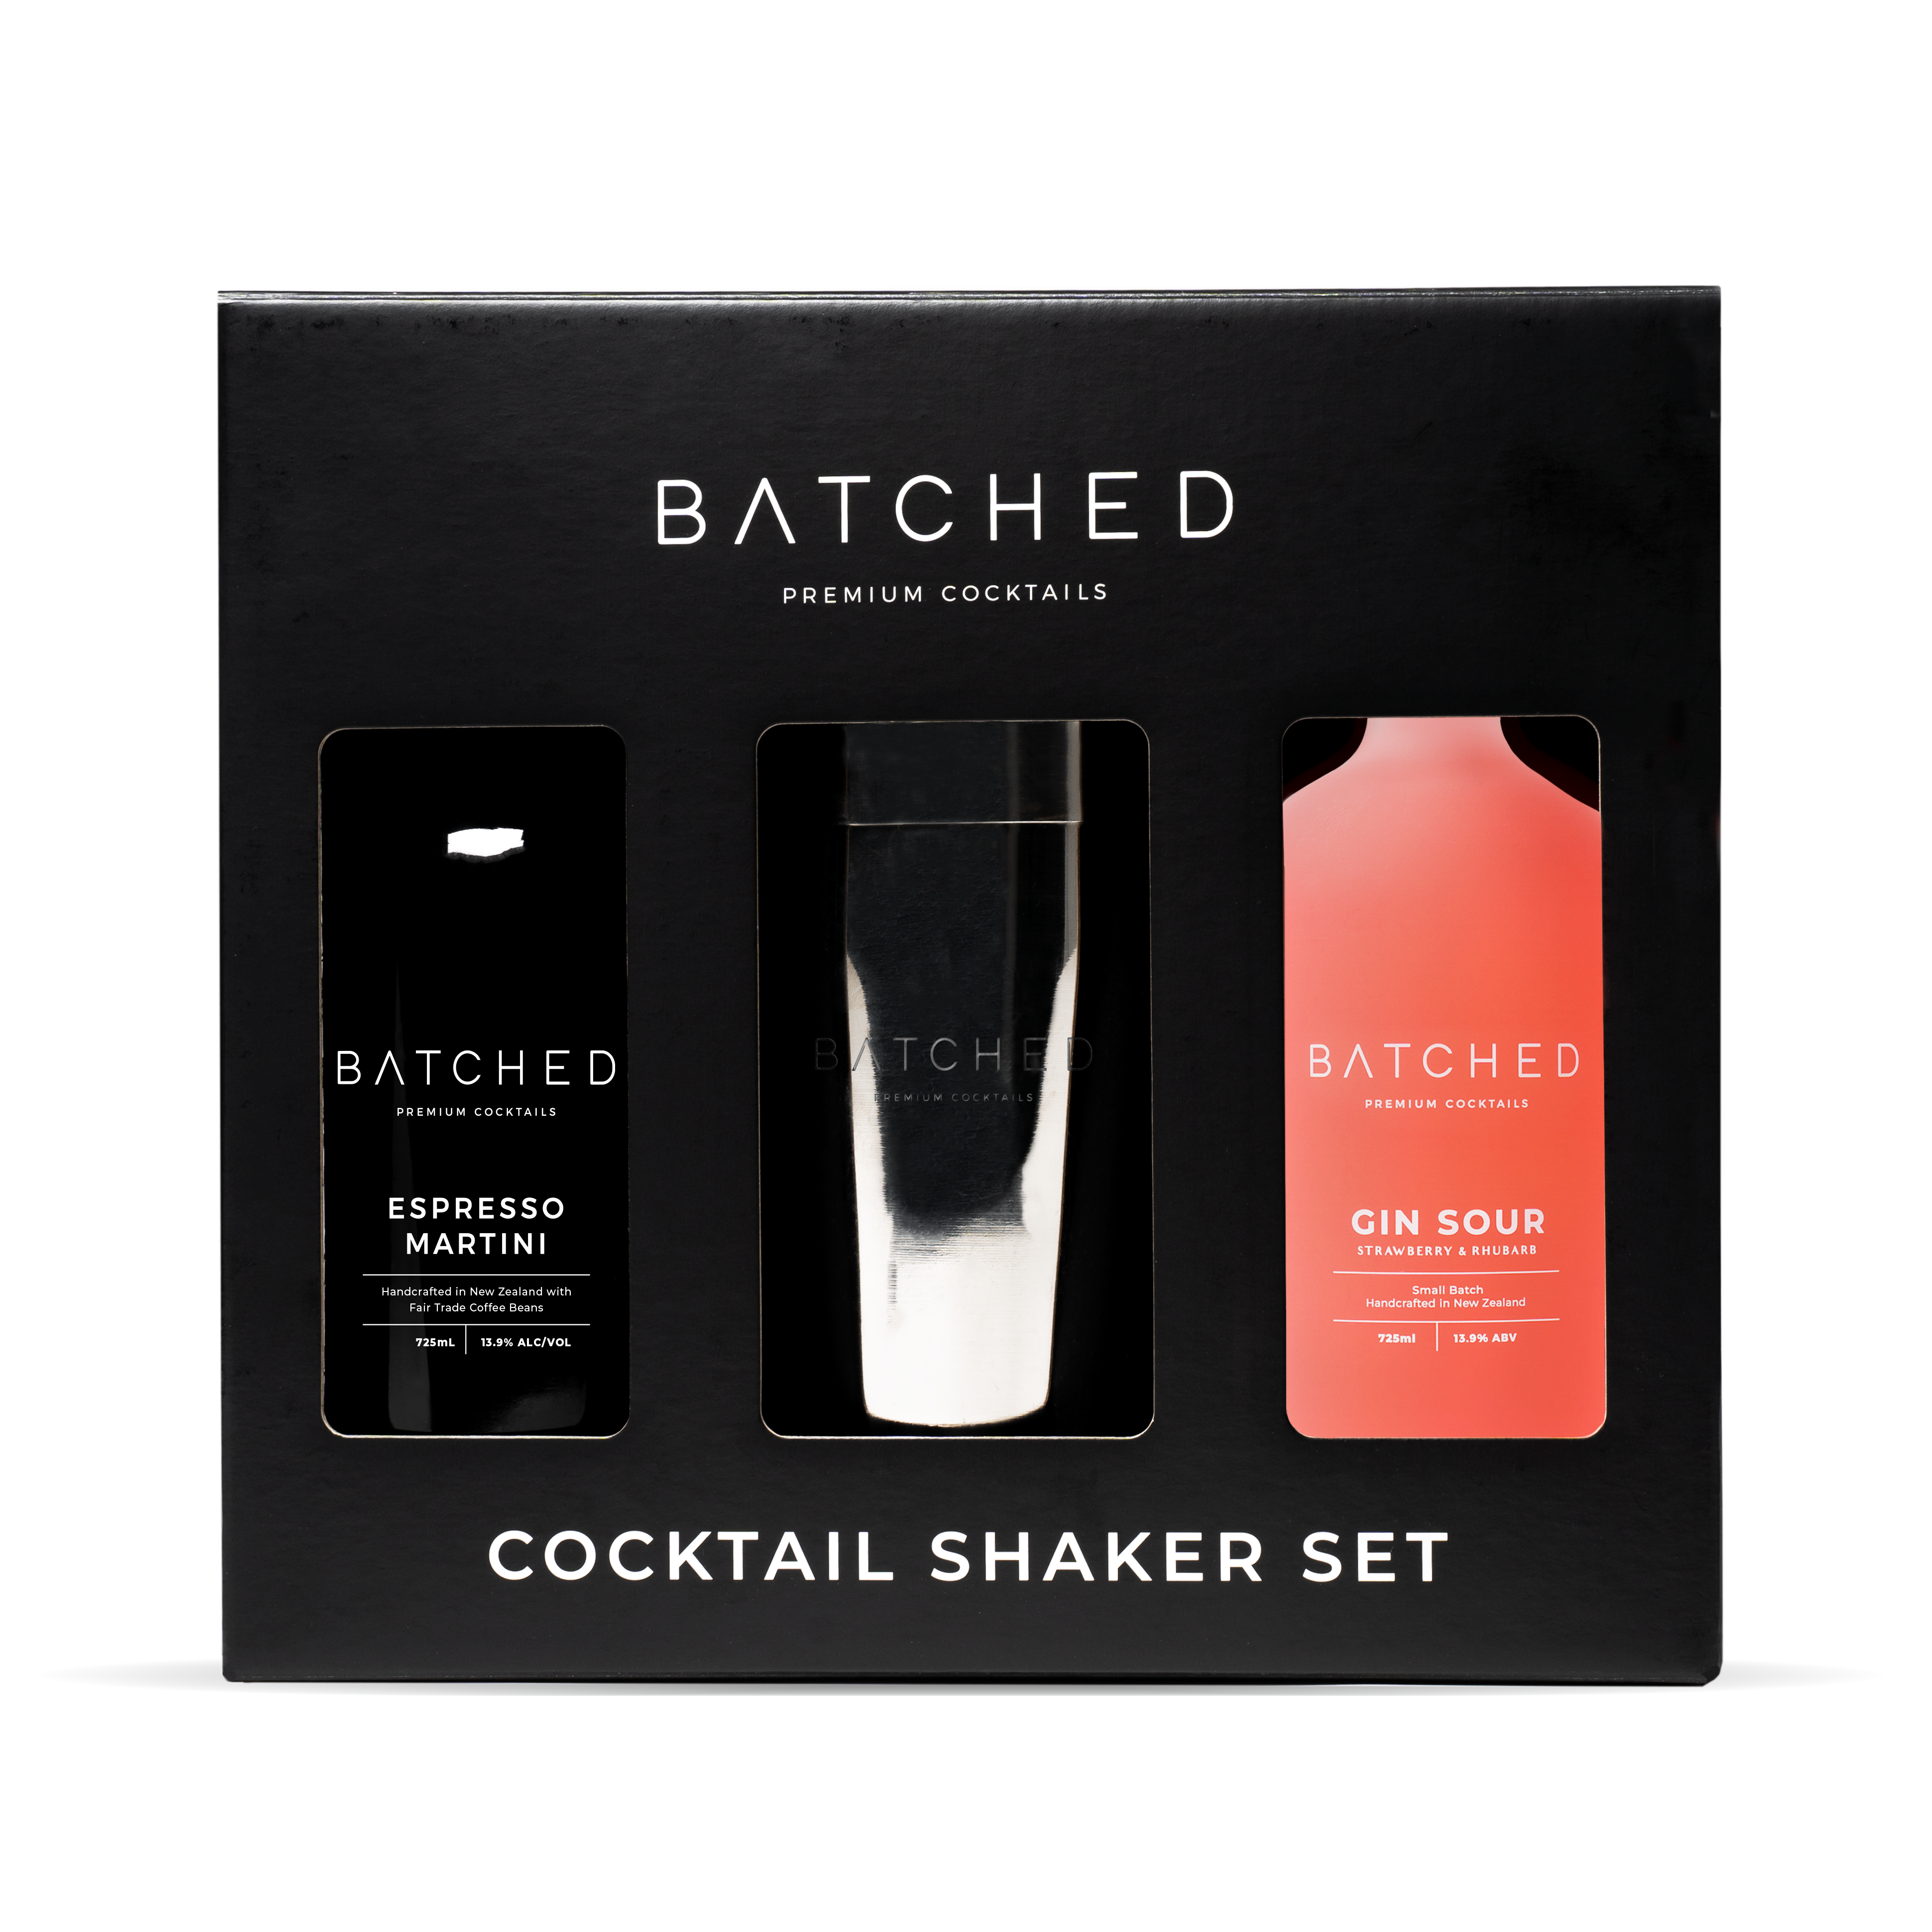 Batched Shaker Set in gift pack presentation